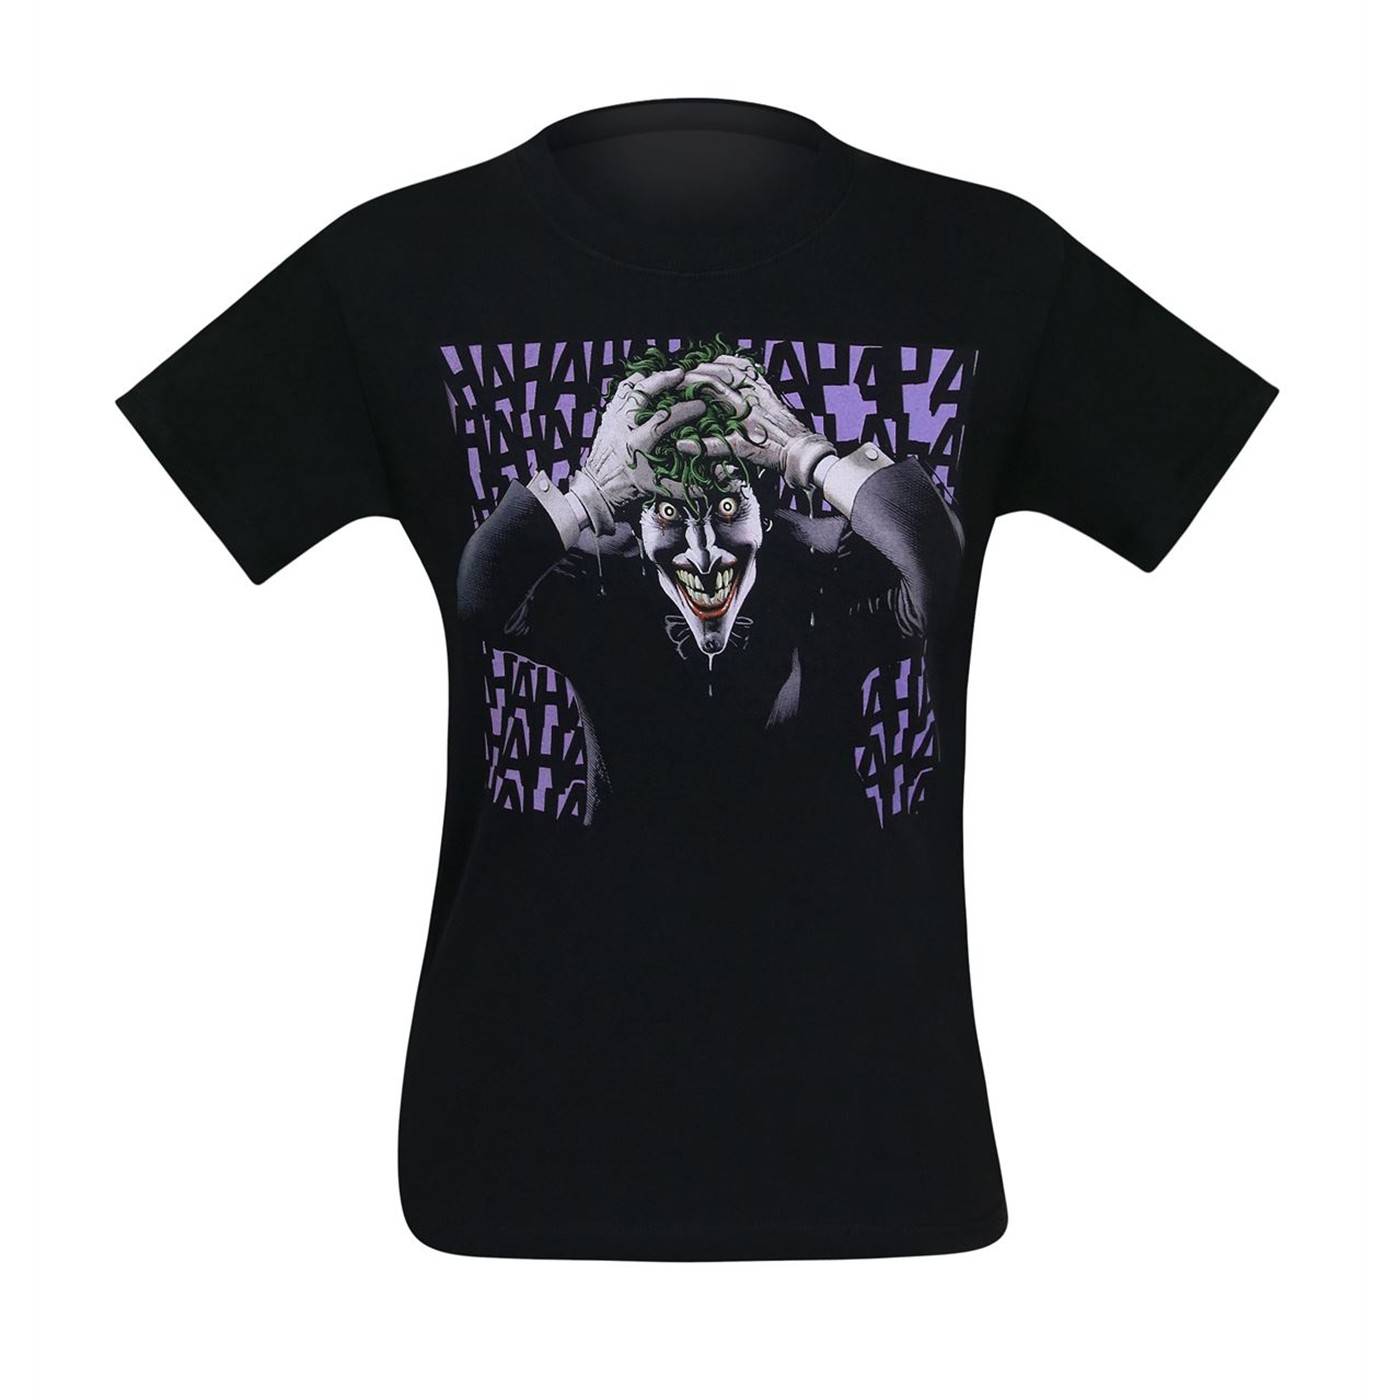 Joker The Killing Joke T-Shirt